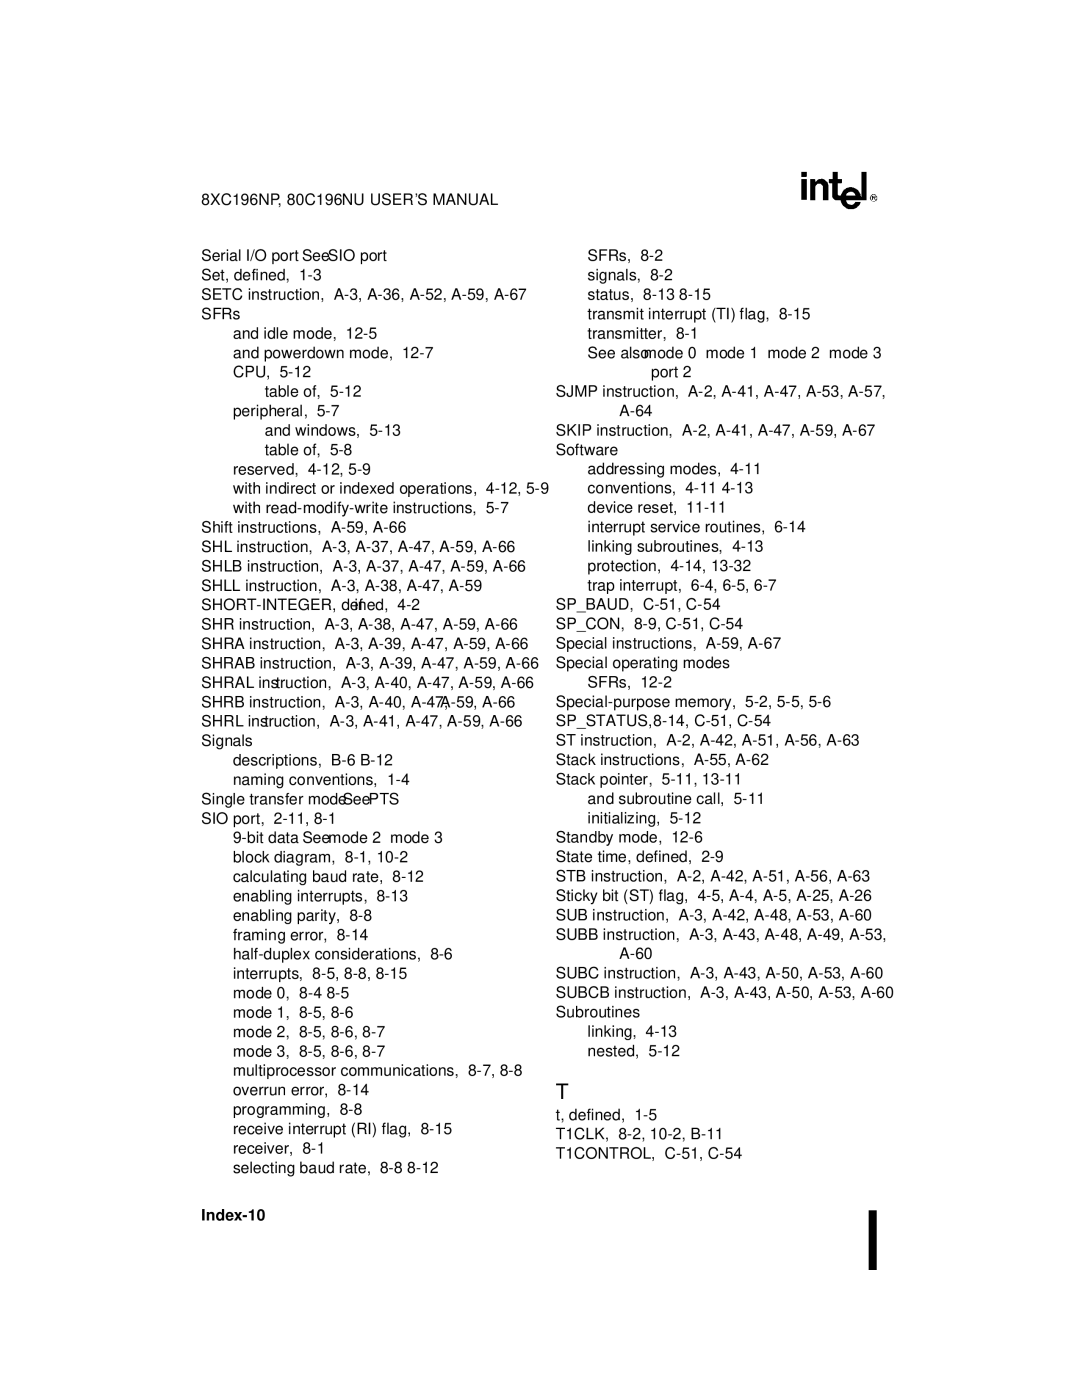 Intel 8XC196NP, 80C196NU, Microcontroller manual Index-10 